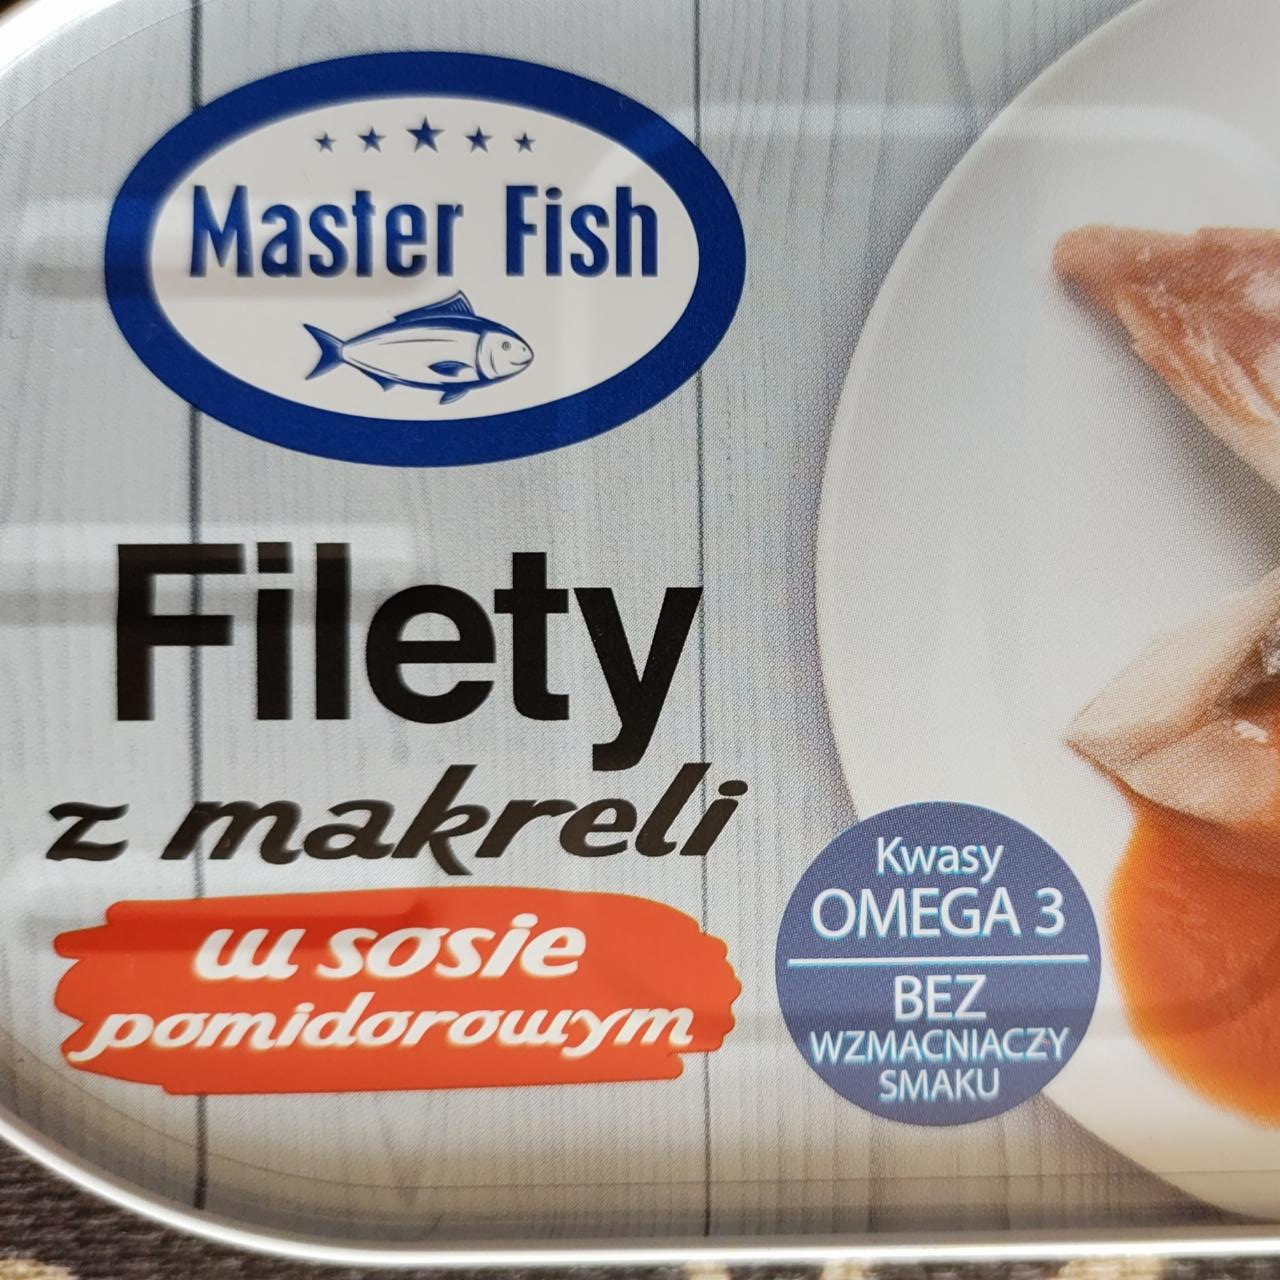 Zdjęcia - Filety z makreli w sosie pomidorowym Master Fish